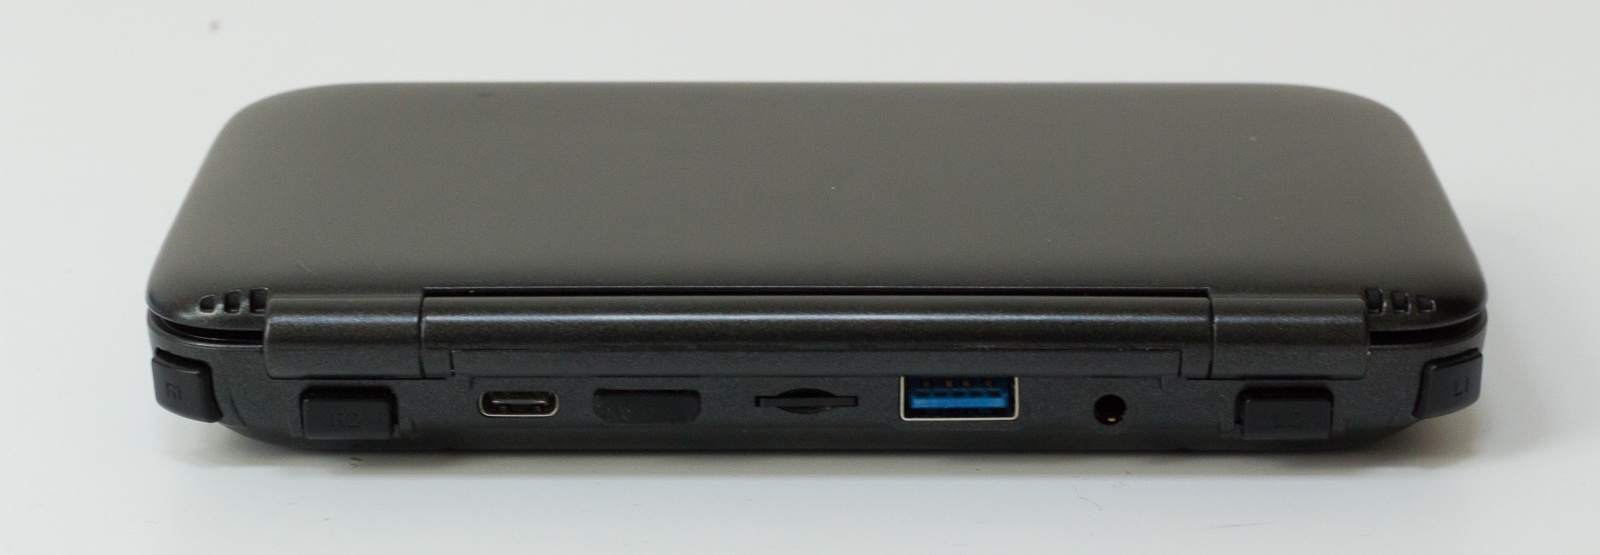 GPD Win — исследуем миниатюрный ноутбук с диагональю 5.5", предназначенный для игр и эмуляторов - 18